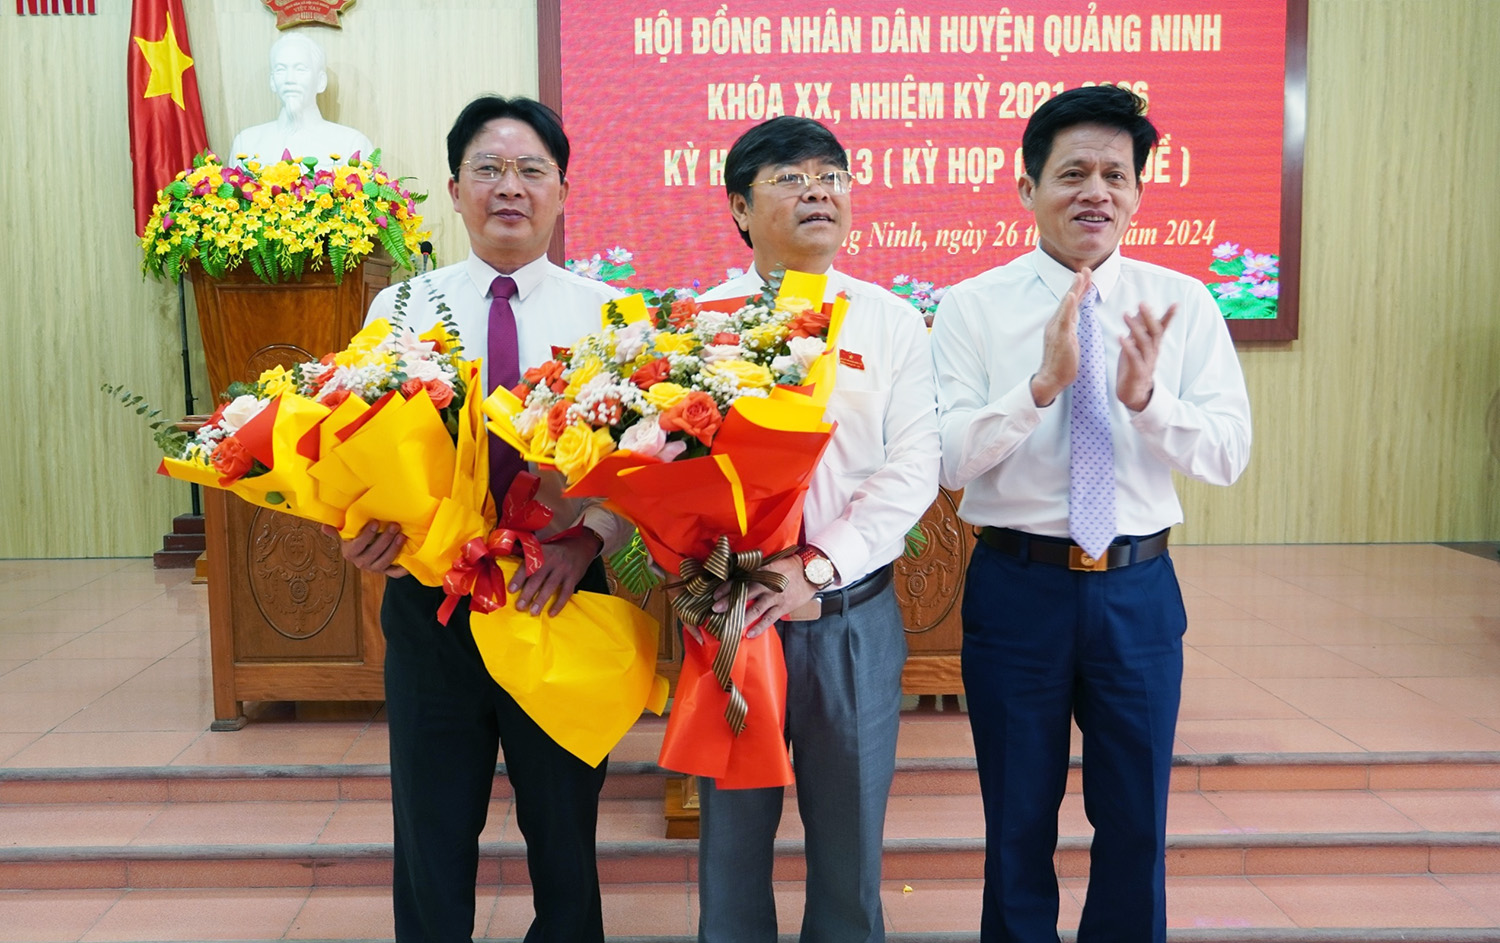 Đồng chí Phạm Trung Đông được bầu làm Chủ tịch HĐND huyện Quảng Ninh